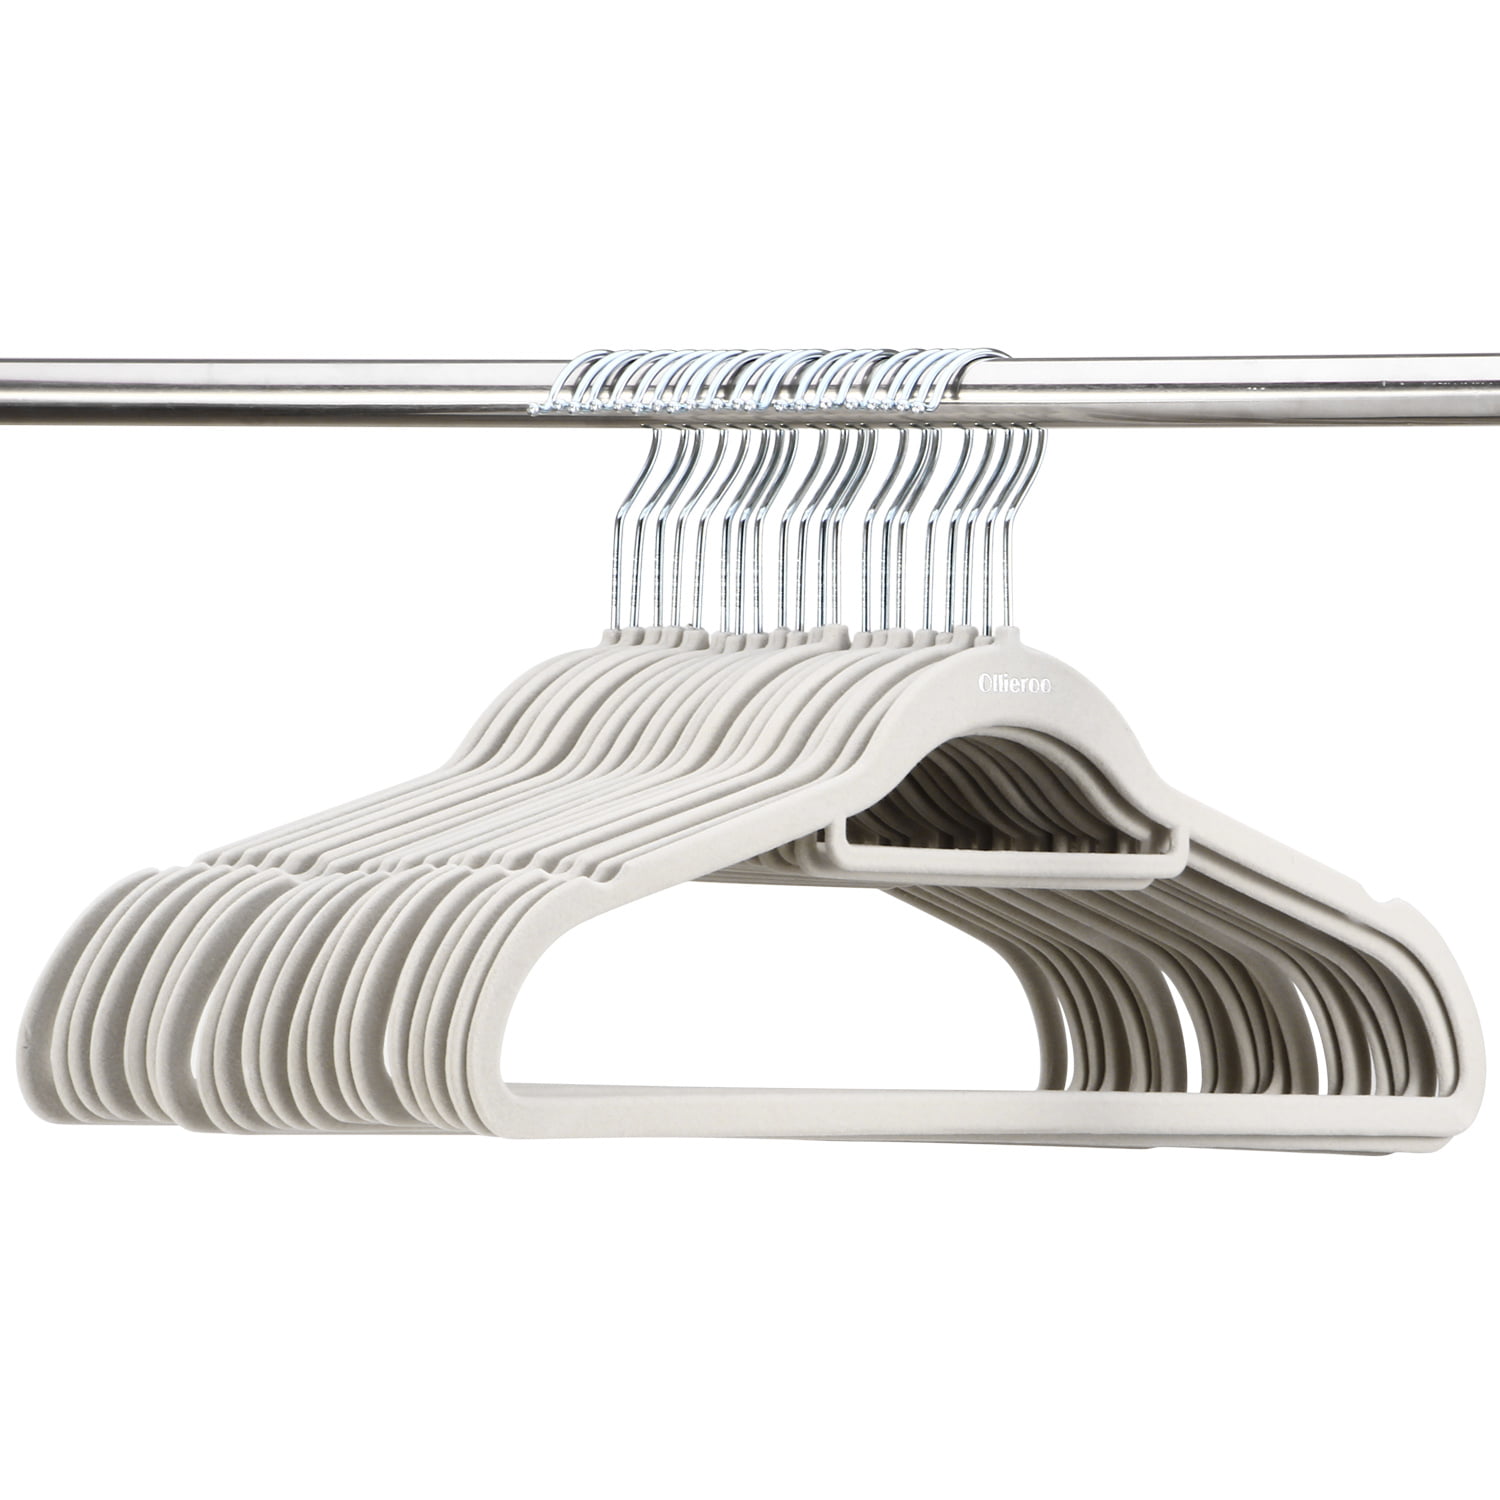 Ollieroo Premium Velvet Hangers,50 Pack Clothing Hangers,Non-Slip